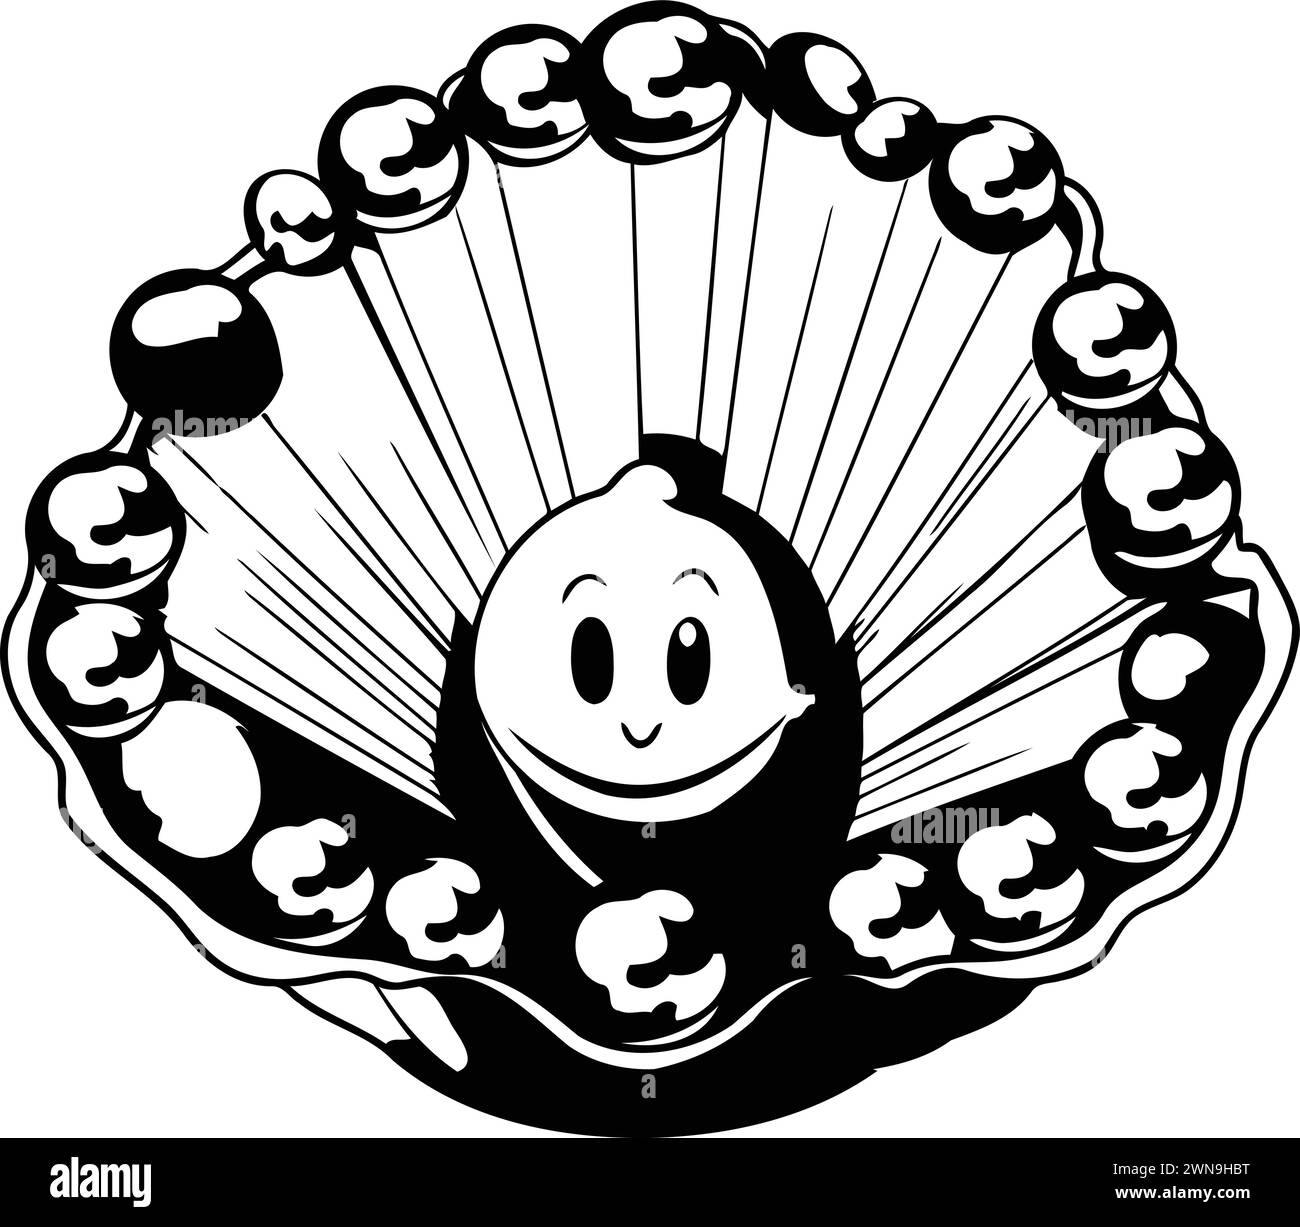 Illustration en noir et blanc d'un coquillage avec un visage souriant Illustration de Vecteur